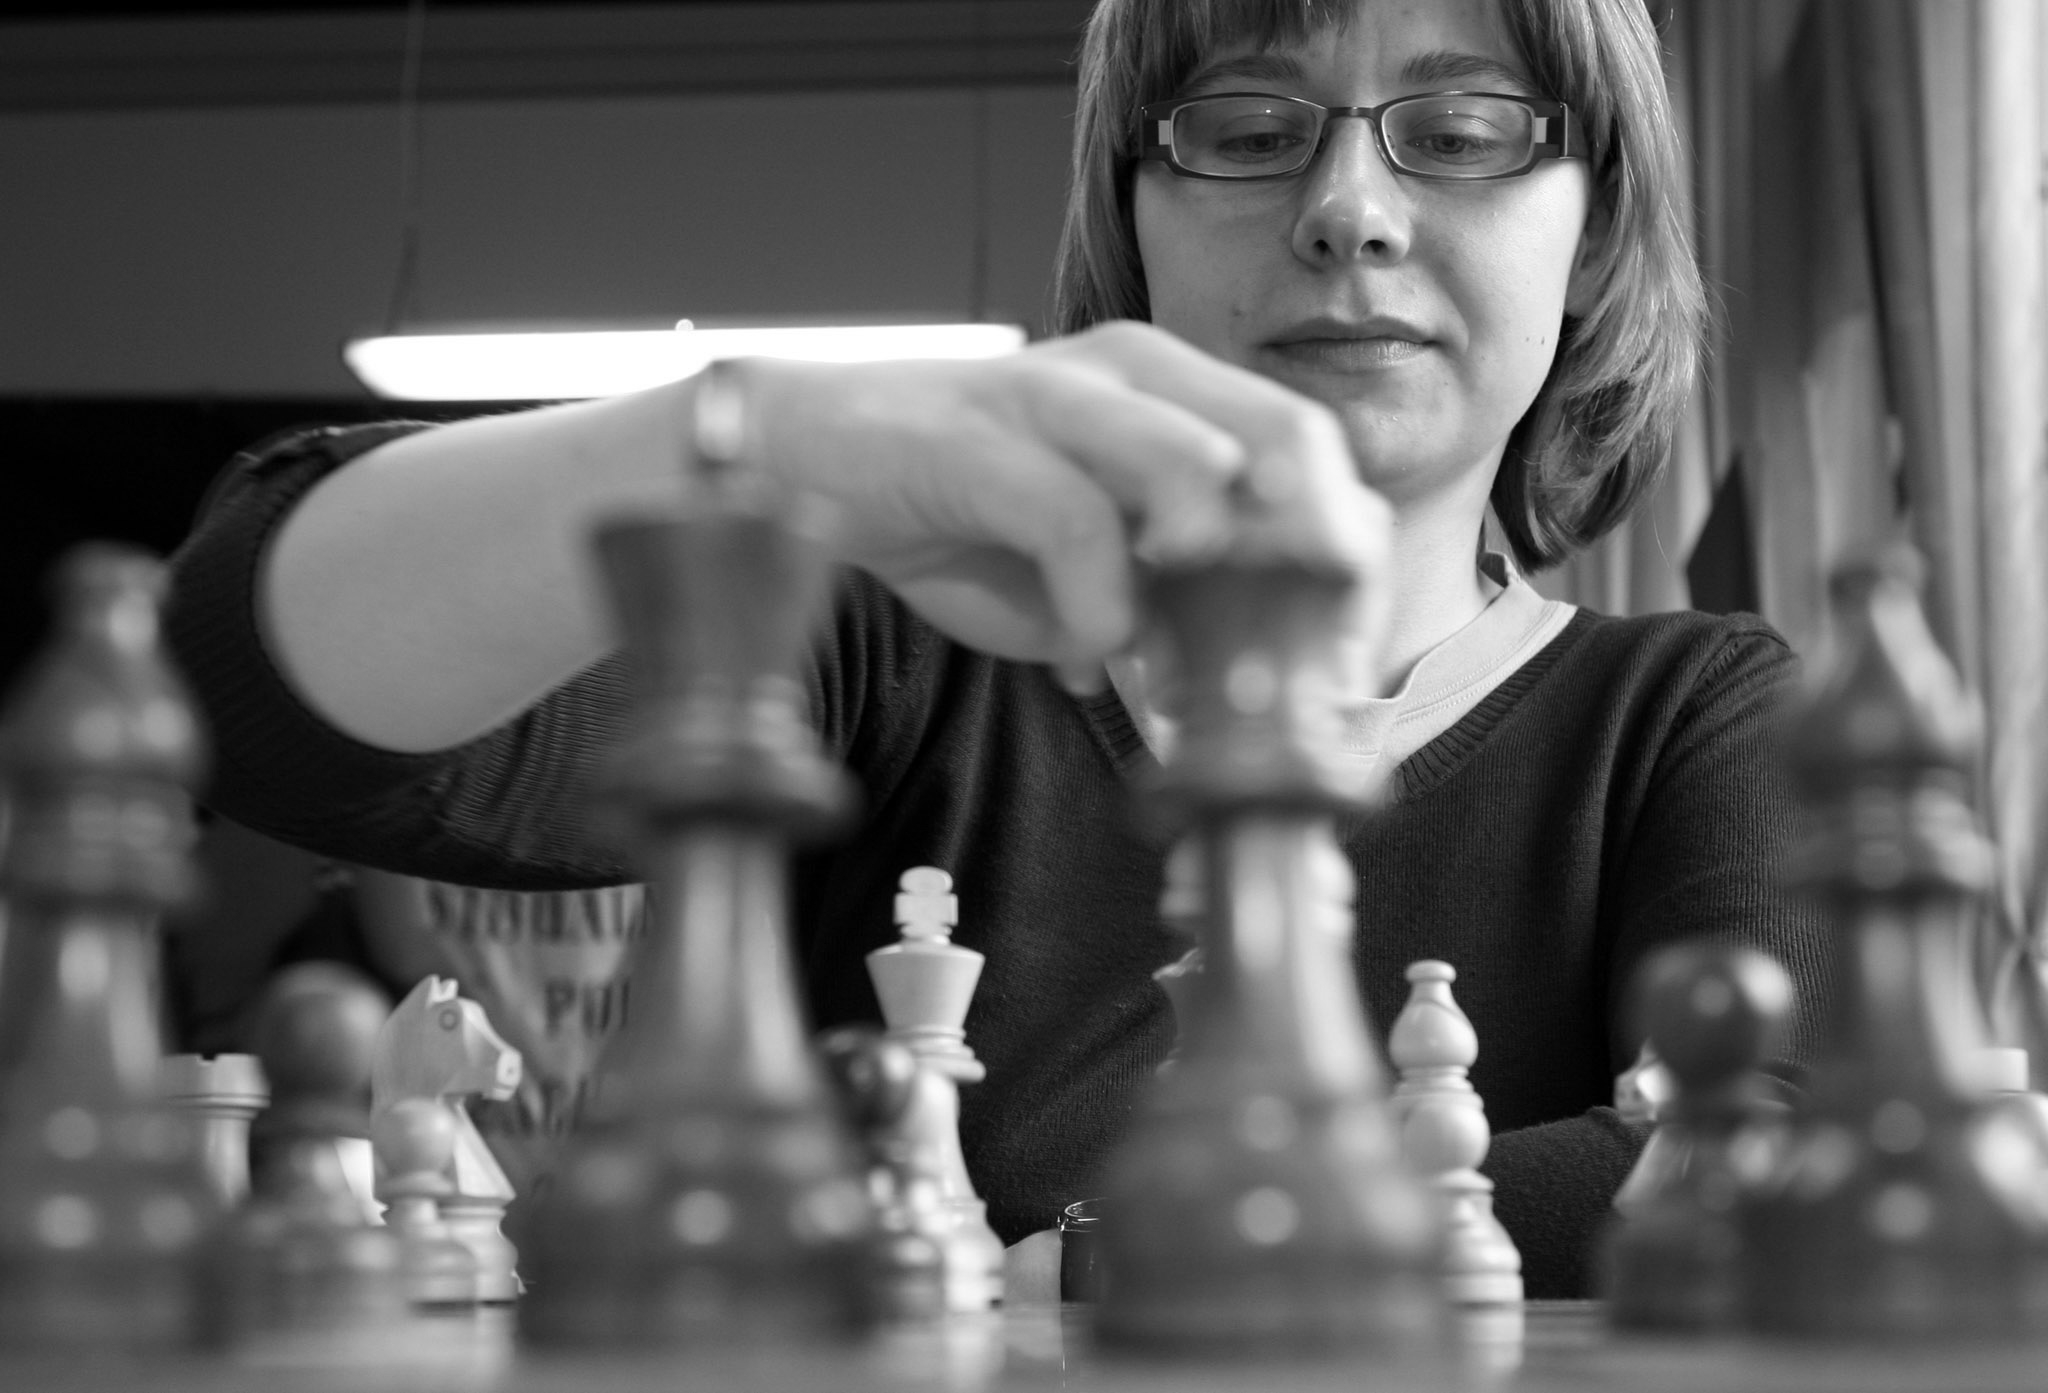 nie żyje joanna dworakowska. polska arcymistrzyni szachowa miała 45 lat